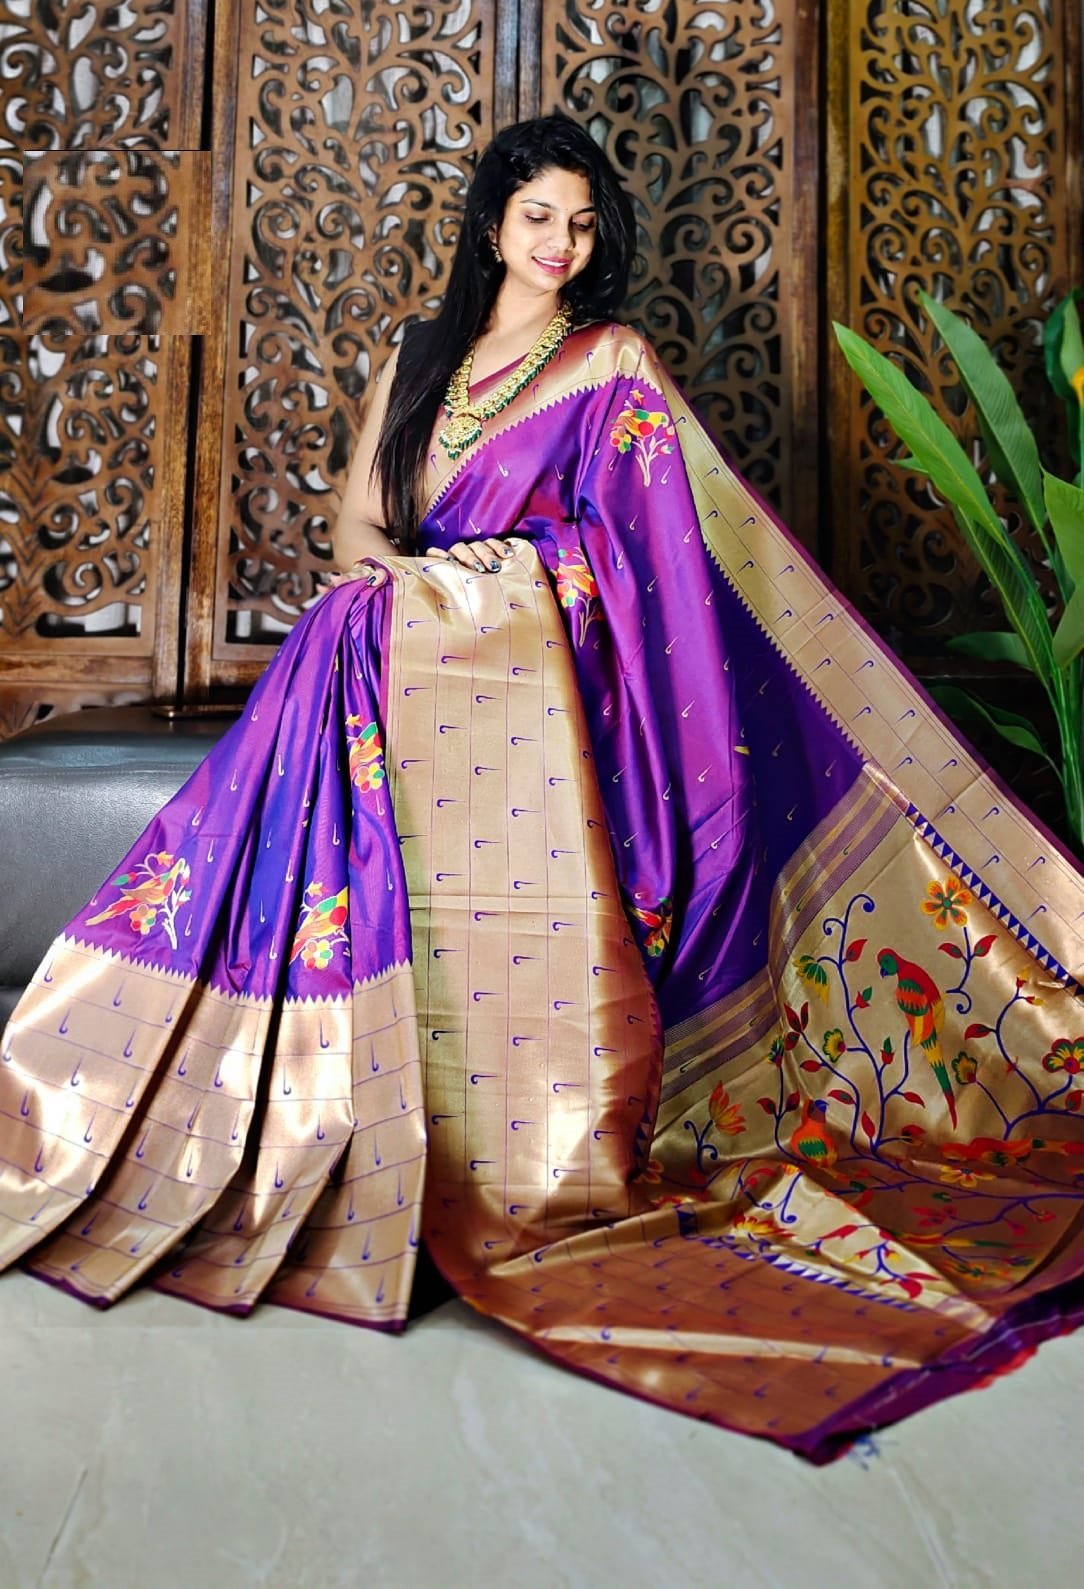 Designer Lehenga Style Saree at Best Price in Jaipur | Shraddha Sarees